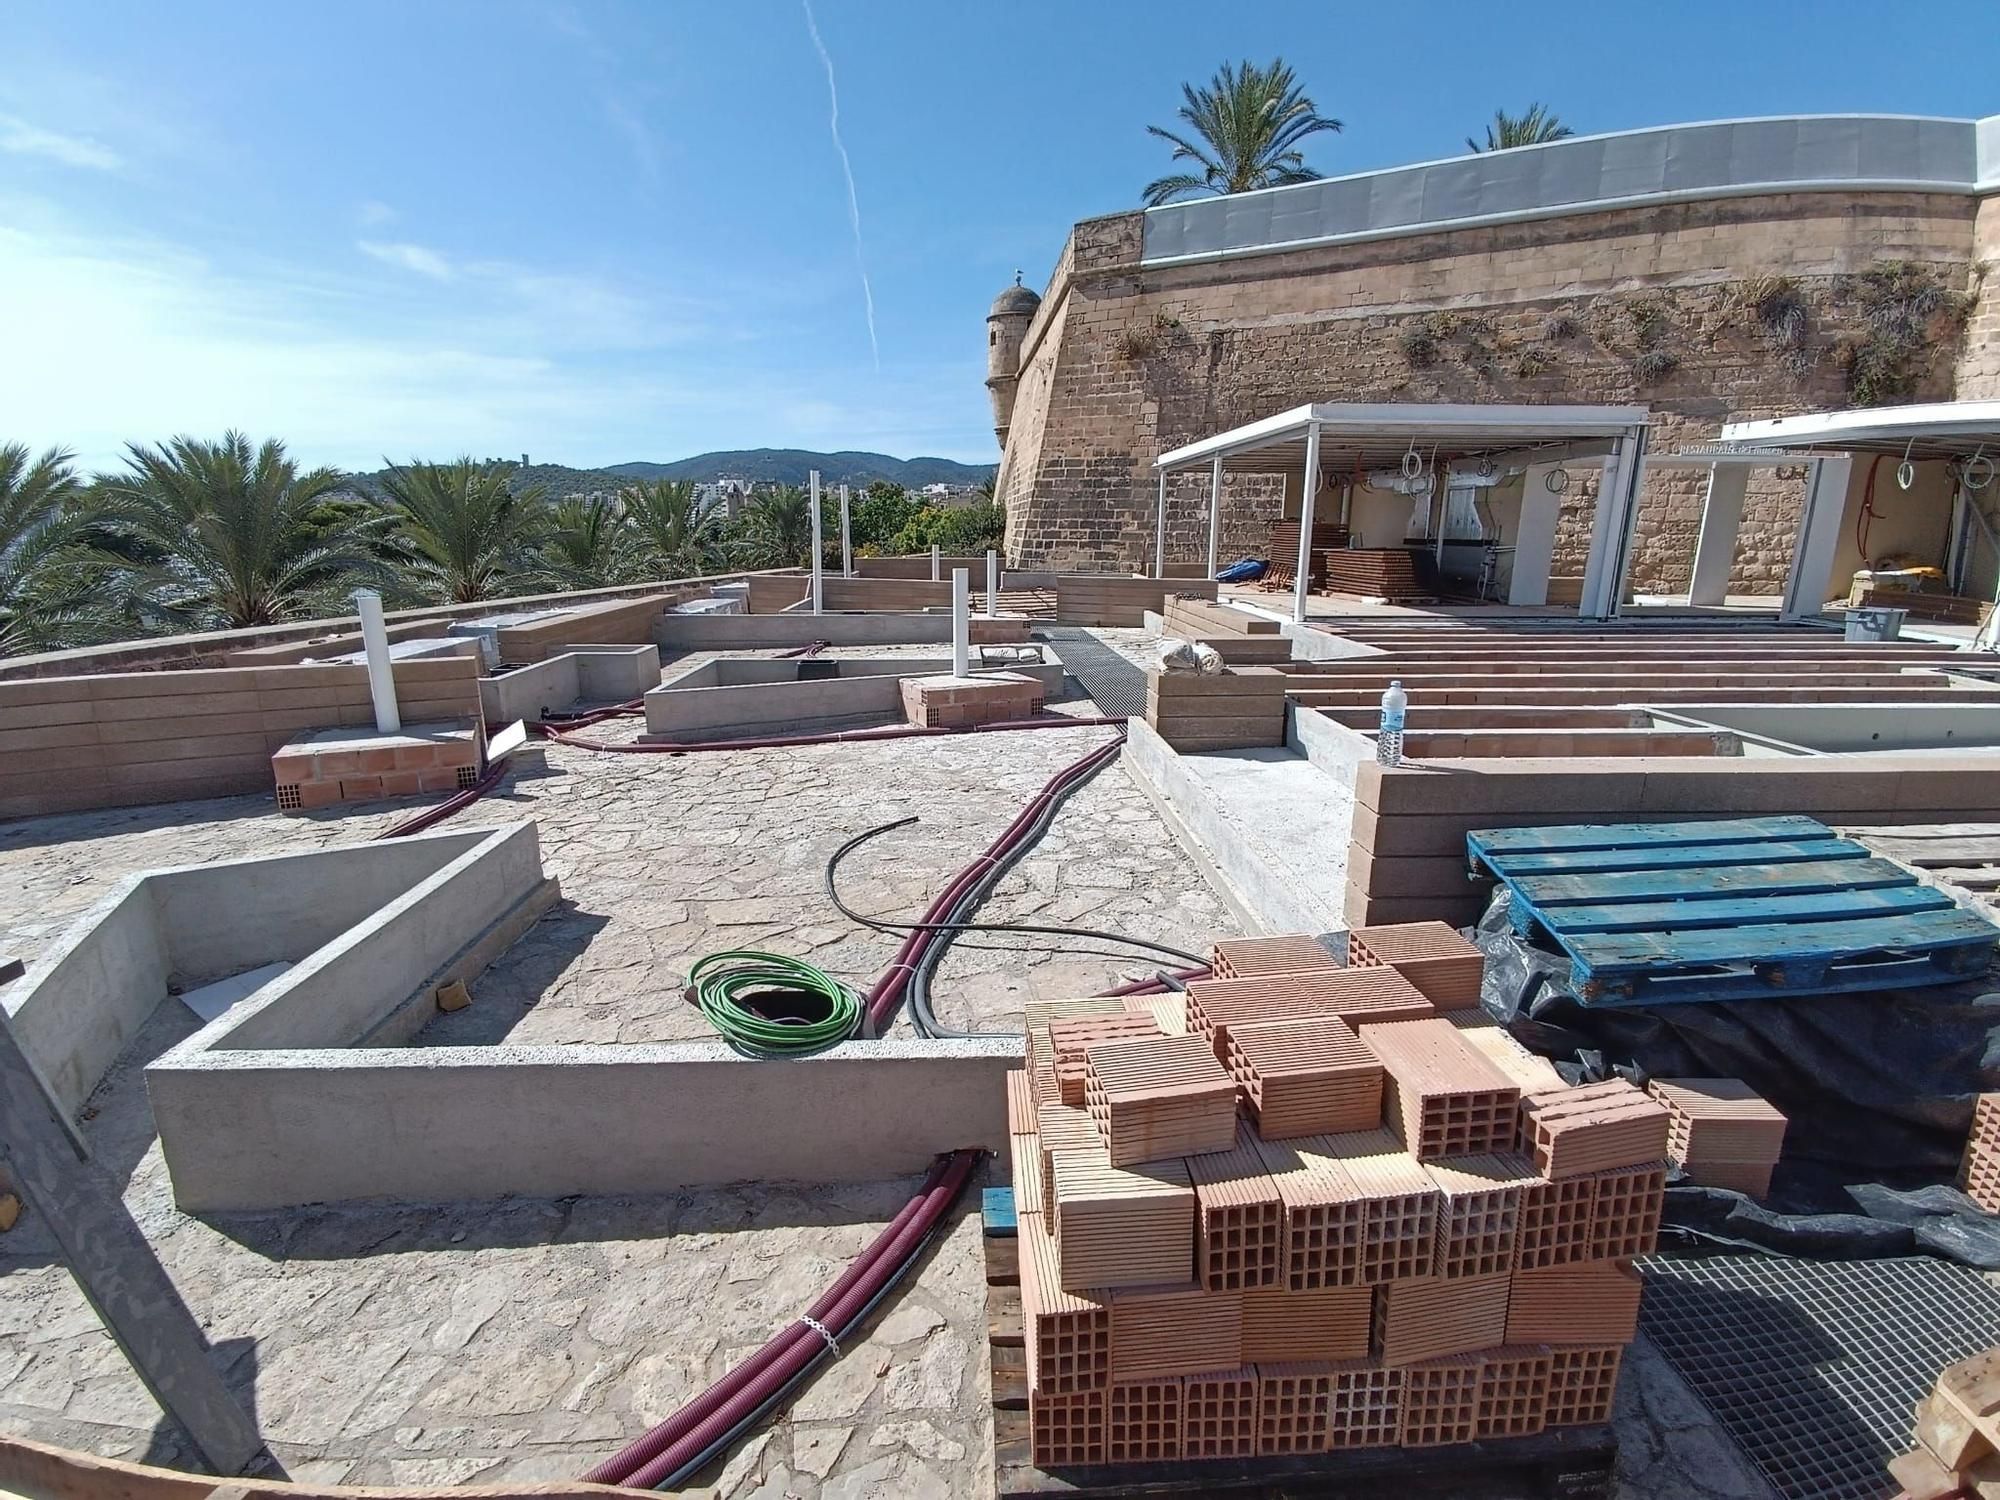 Beach Club am Museum Es Baluard auf Mallorca – Bauarbeiten vorerst gestoppt